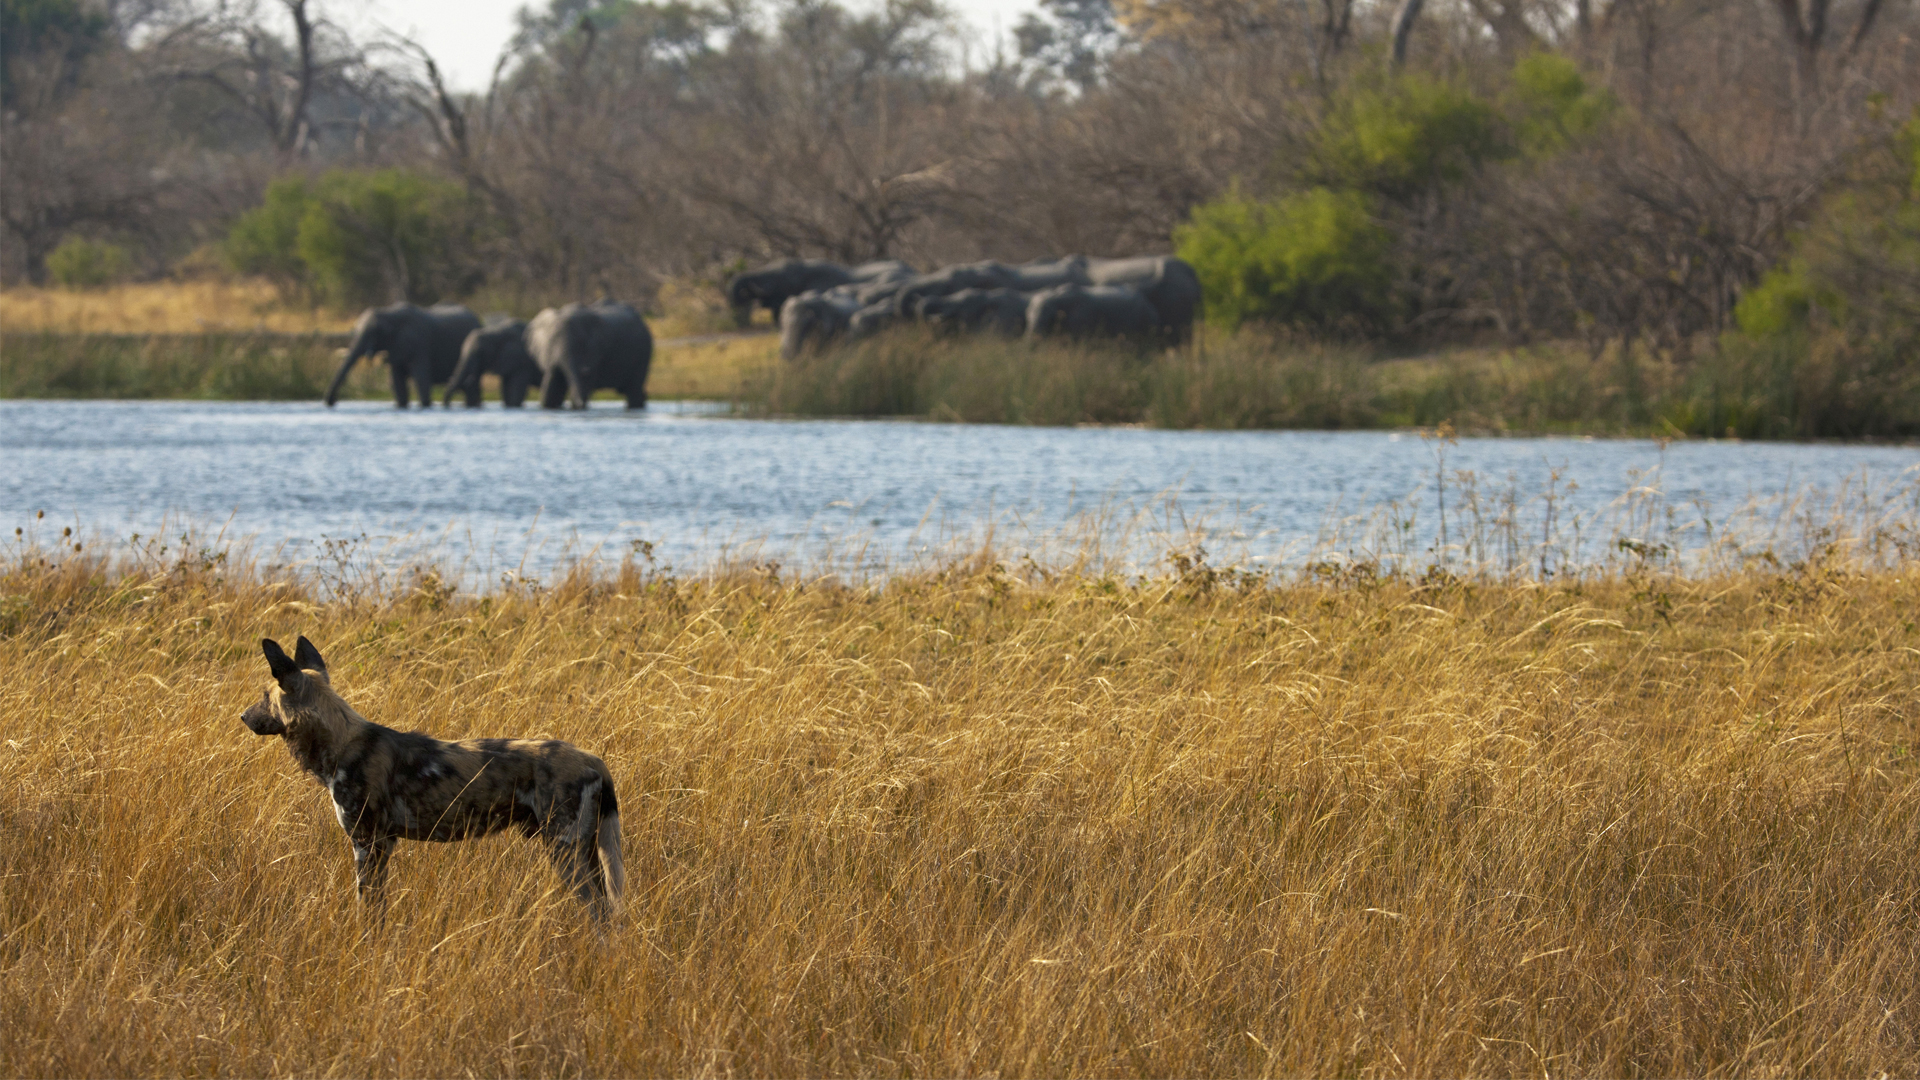 Botswana Regions linyanti zarafa wild dog and elephant